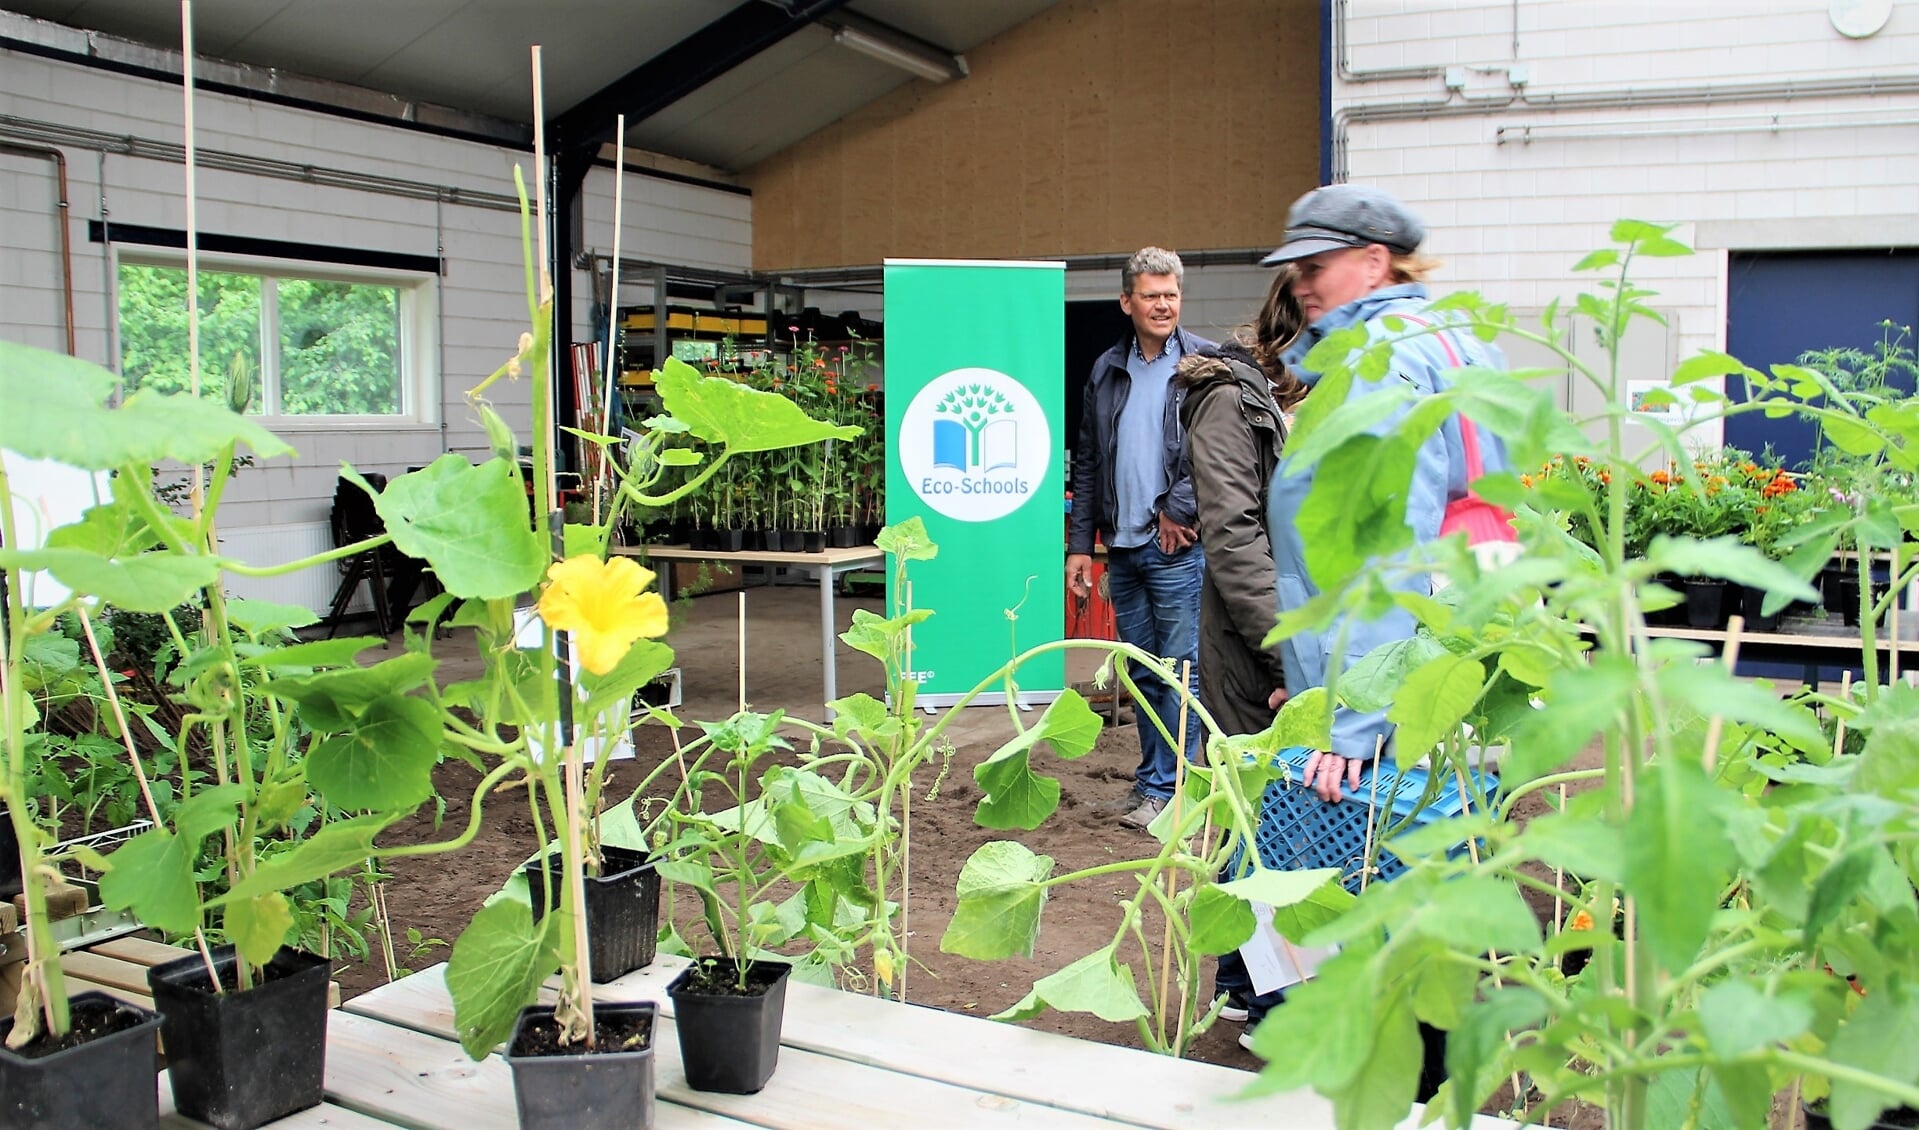 Eco-Schools aanwezig tijdens Plantjesmarkt bij Aeres VMBO Ede.